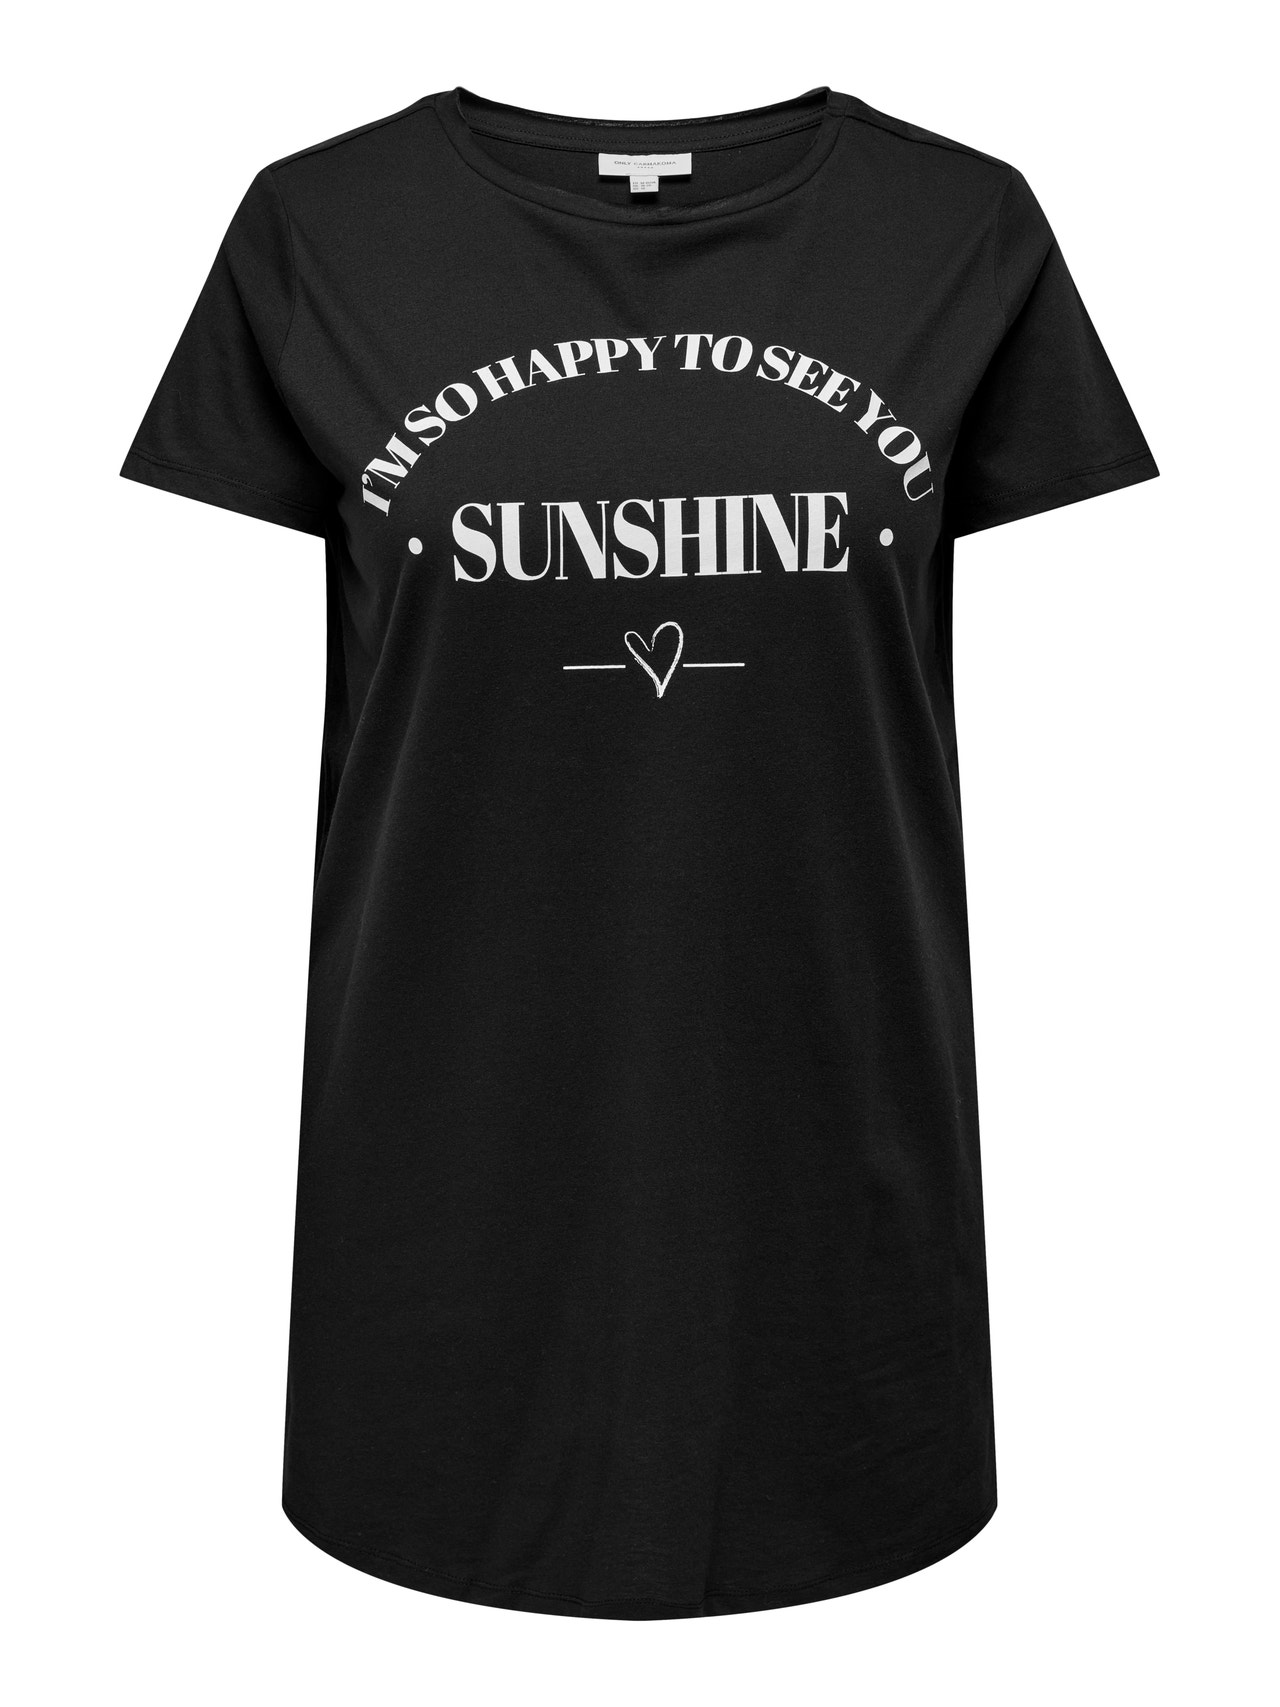 ONLY Curvy - Long T-Shirt -Black - 15289125